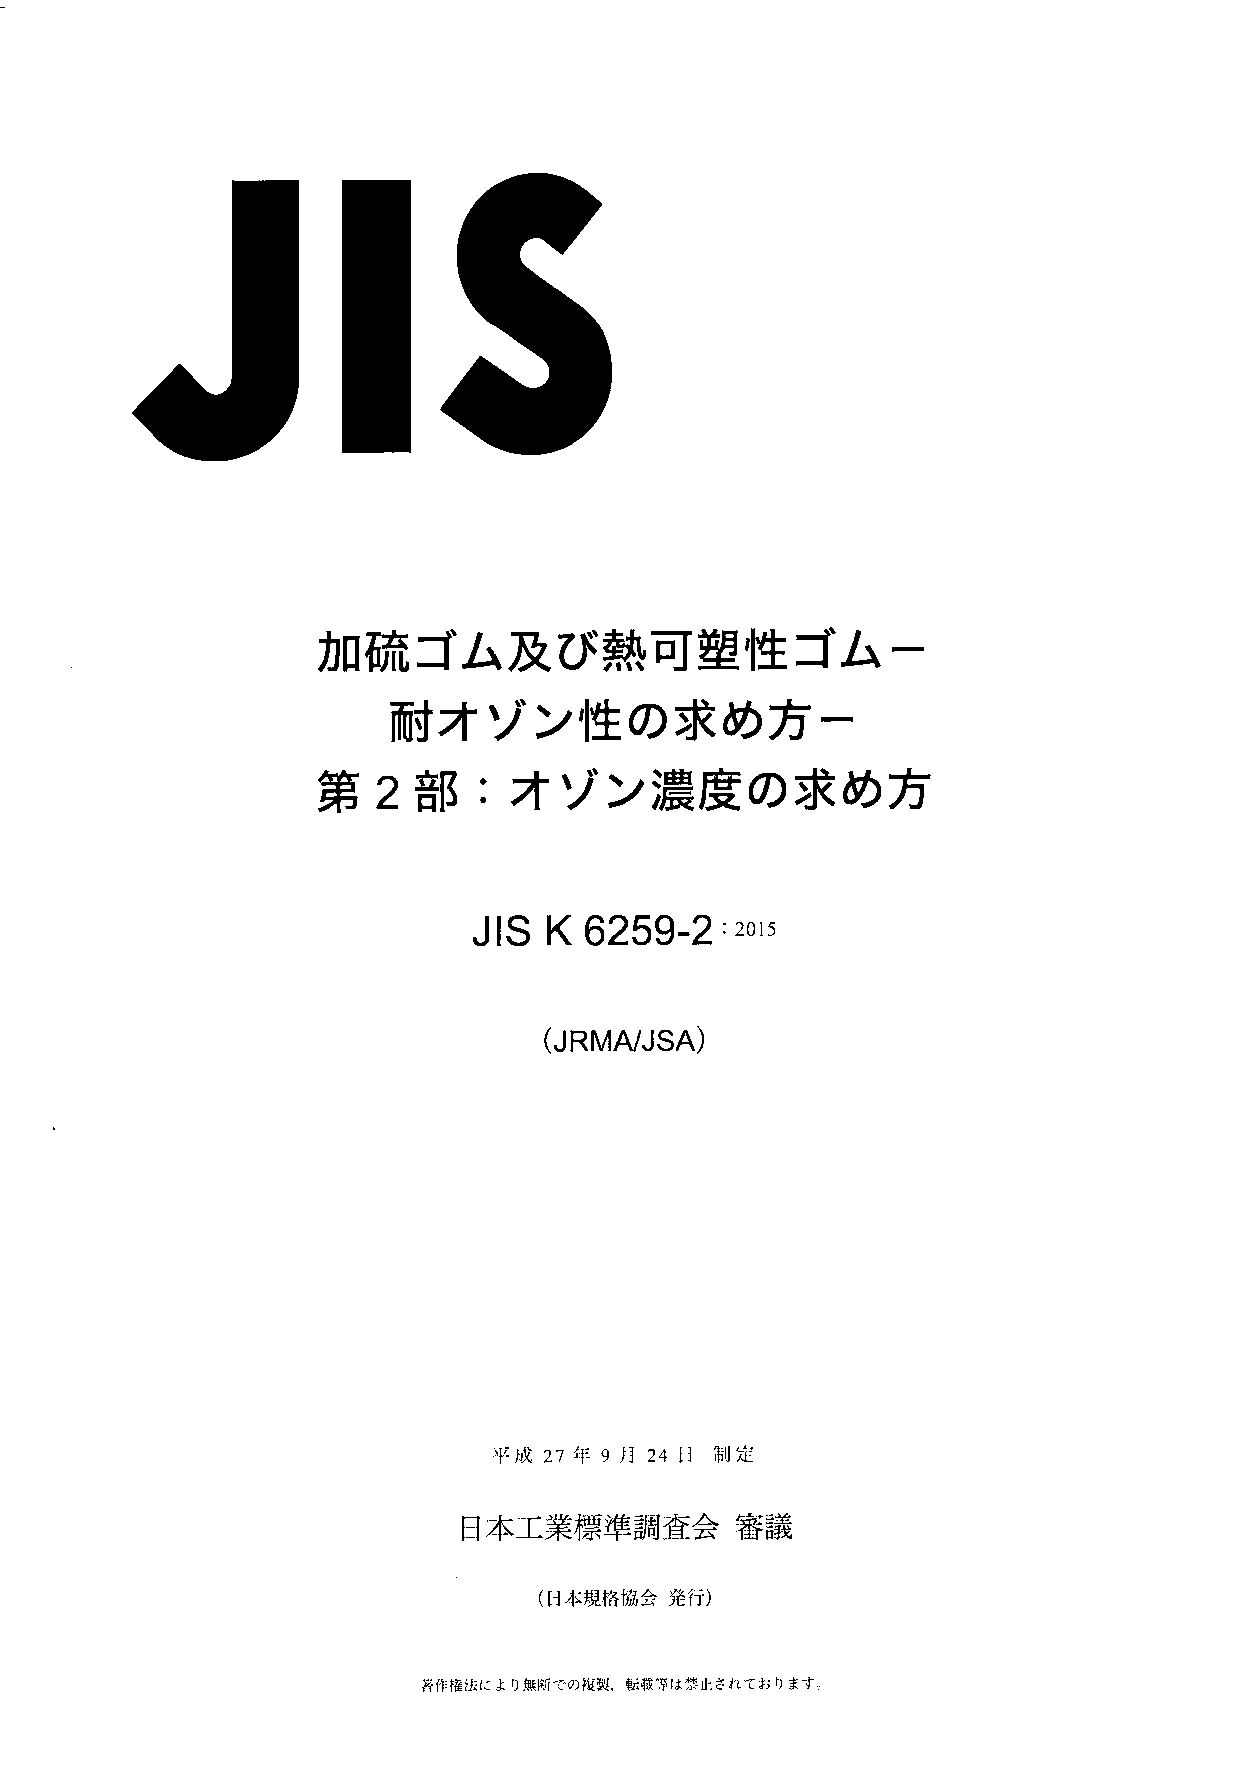 JIS K 6259-2:2015封面图